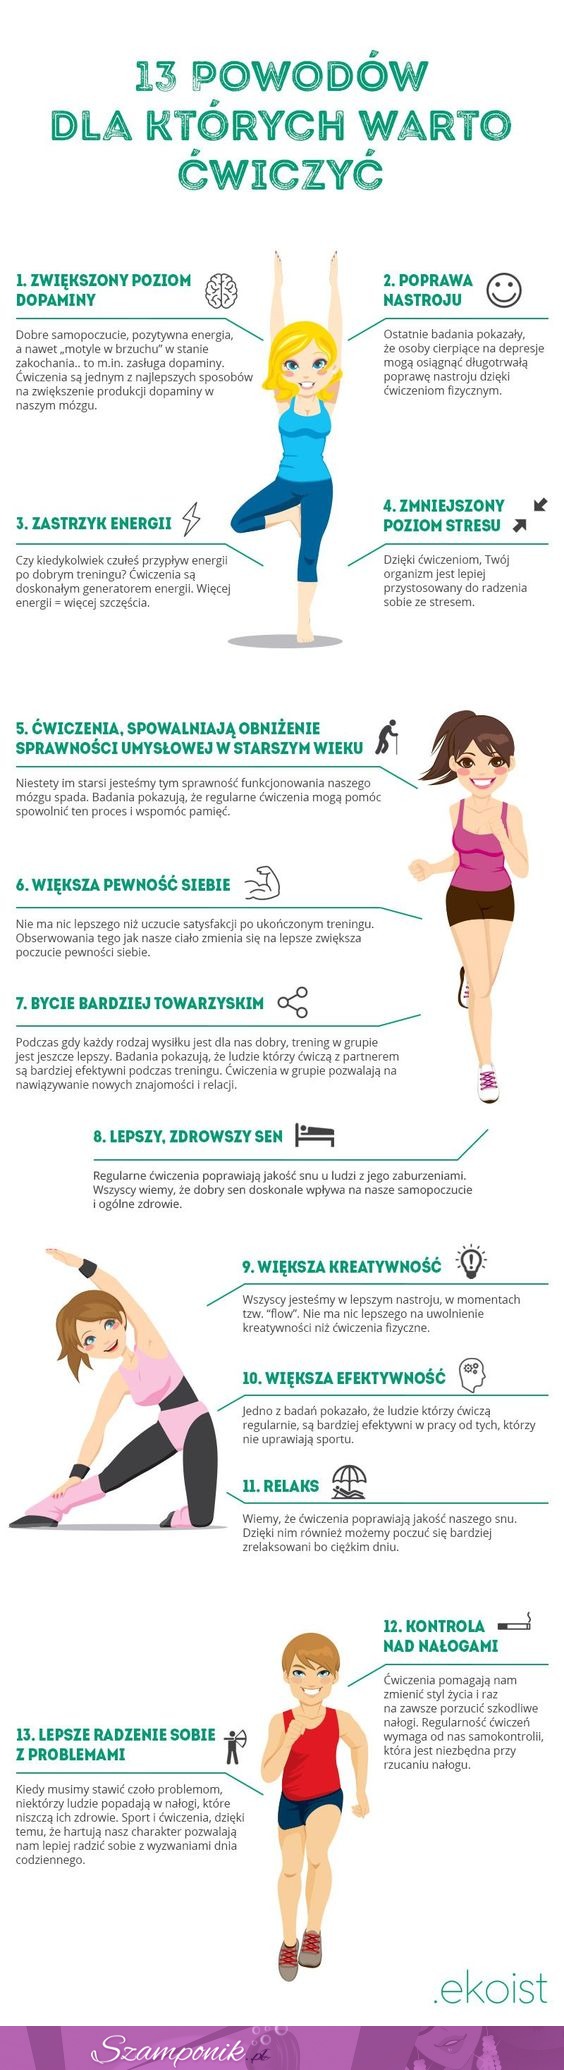 13 powodów, dla których warto ćwiczyć!